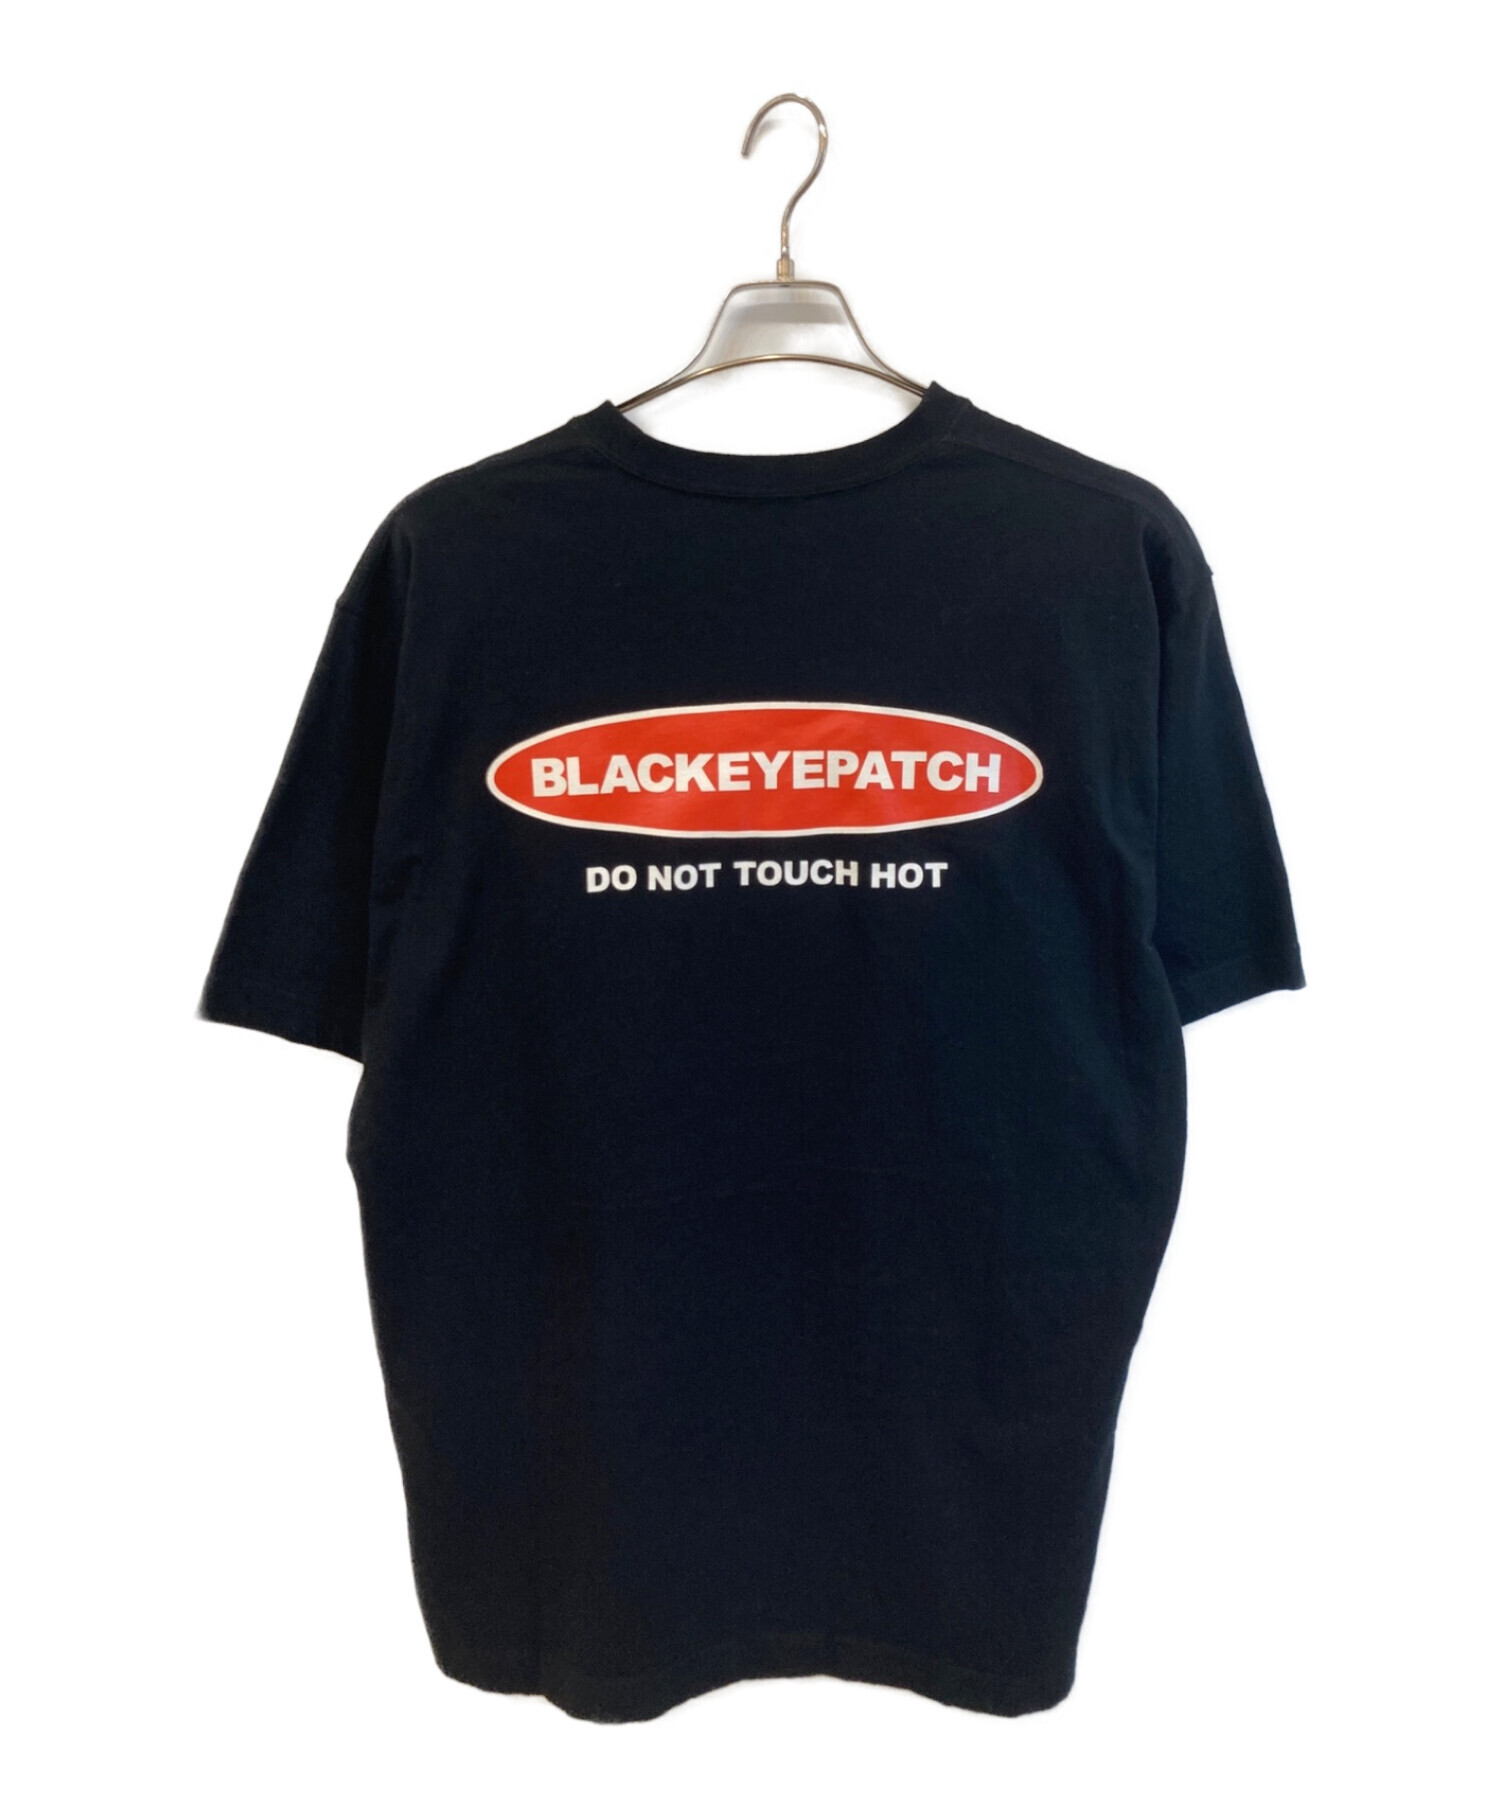 BlackEyePatch (ブラックアイパッチ) Tシャツ ブラック サイズ:L